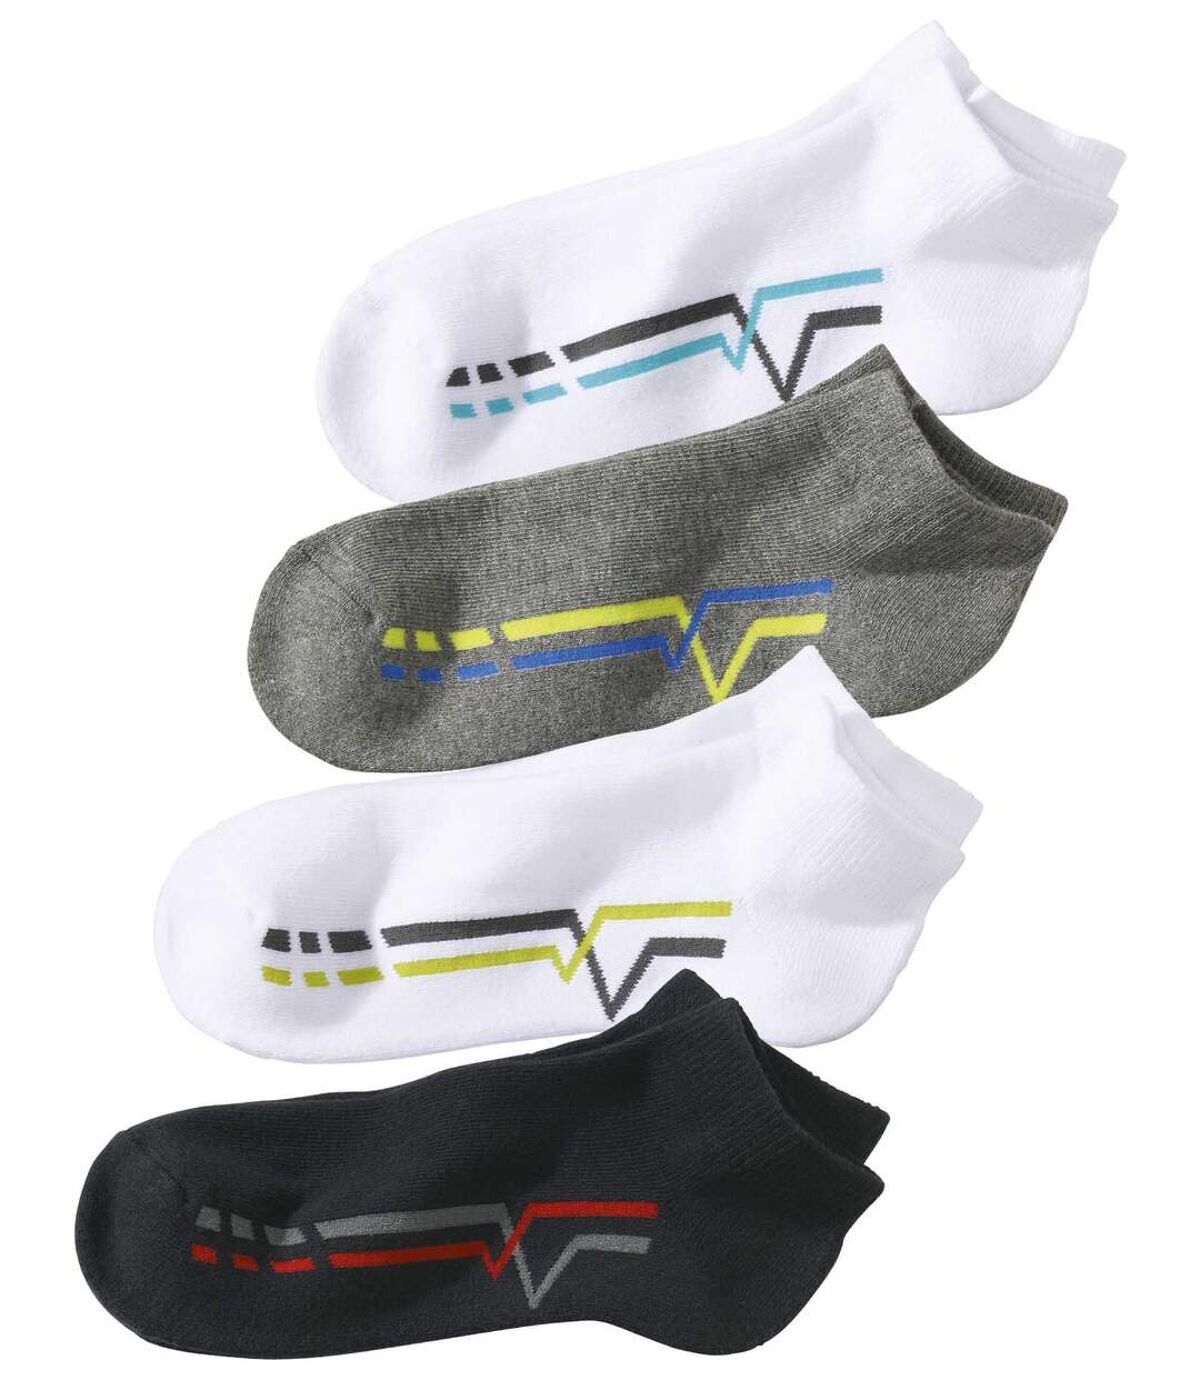 Pack of 4 Men's Sporty Trainer Socks - White Black Grey Atlas For Men